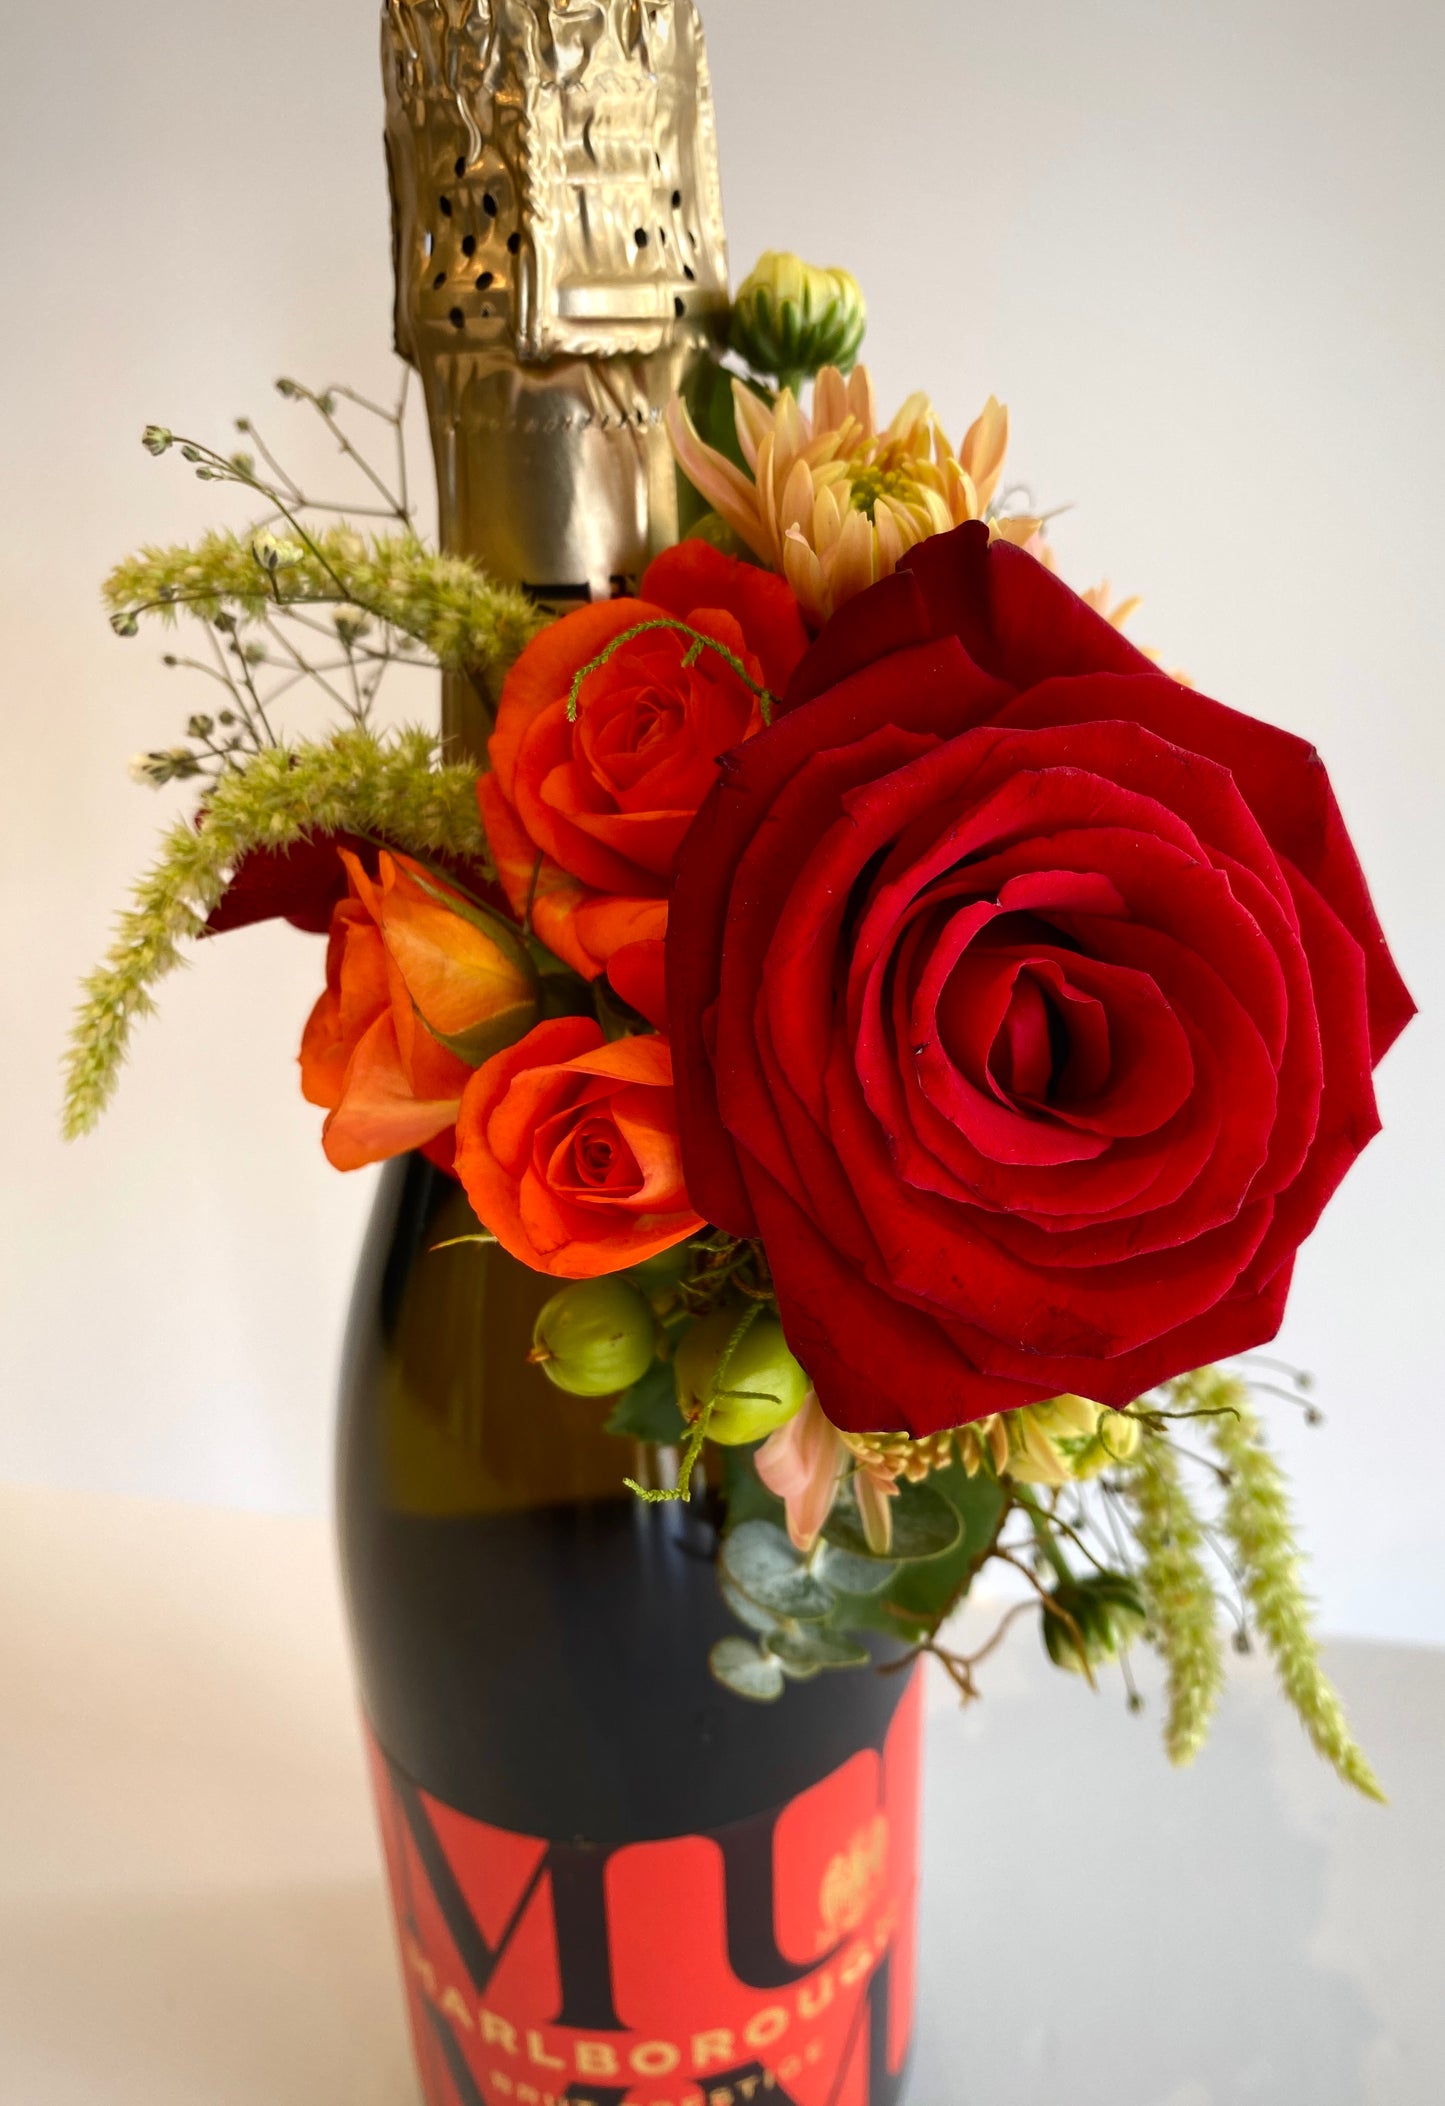 Mumm Marlborough Brut Prestige with Floral Arrangement